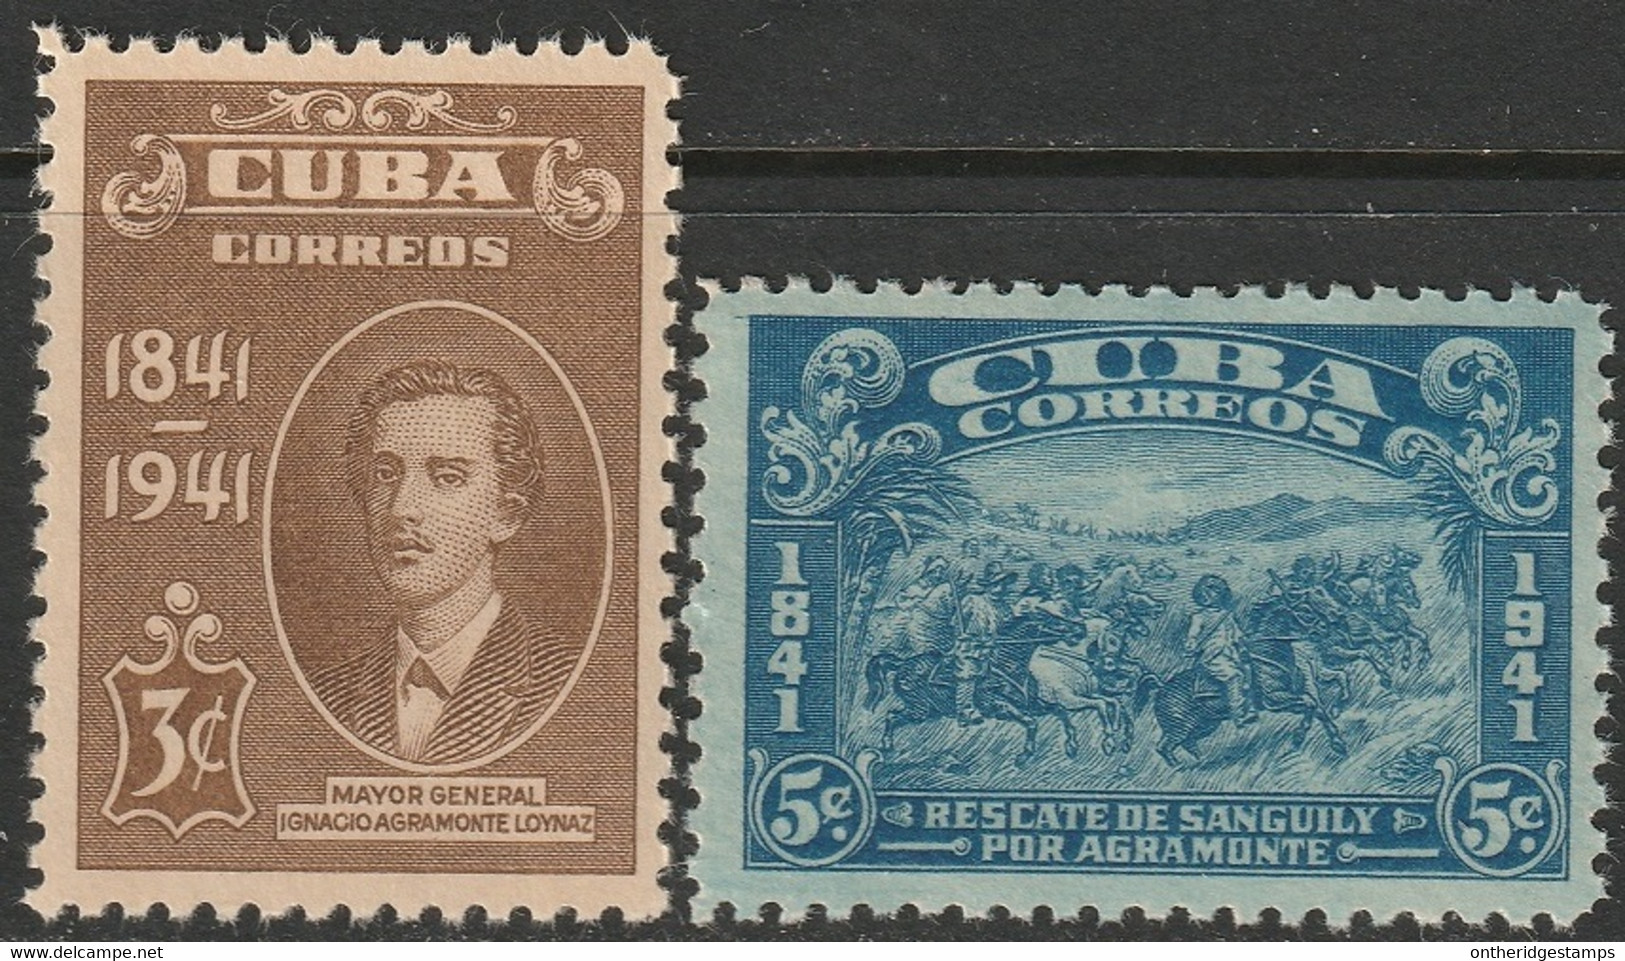 Cuba 1942 Sc 373-4 Yt 274-5 Set MNH** - Ungebraucht